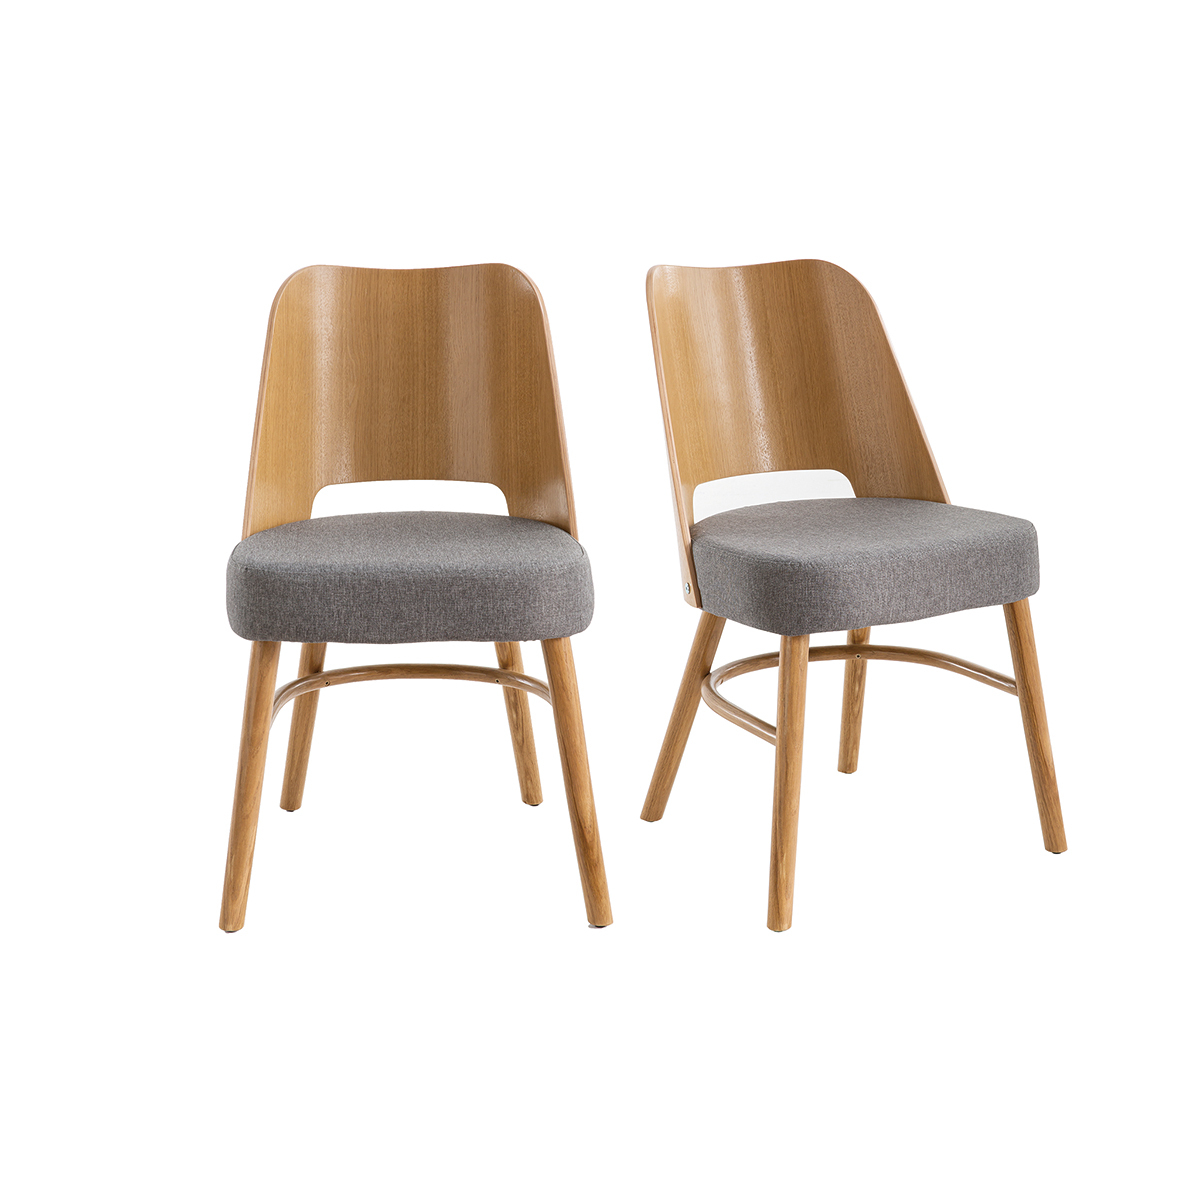 Chaises vintage chêne et assise gris chiné (lot de 2) EDITO vue1